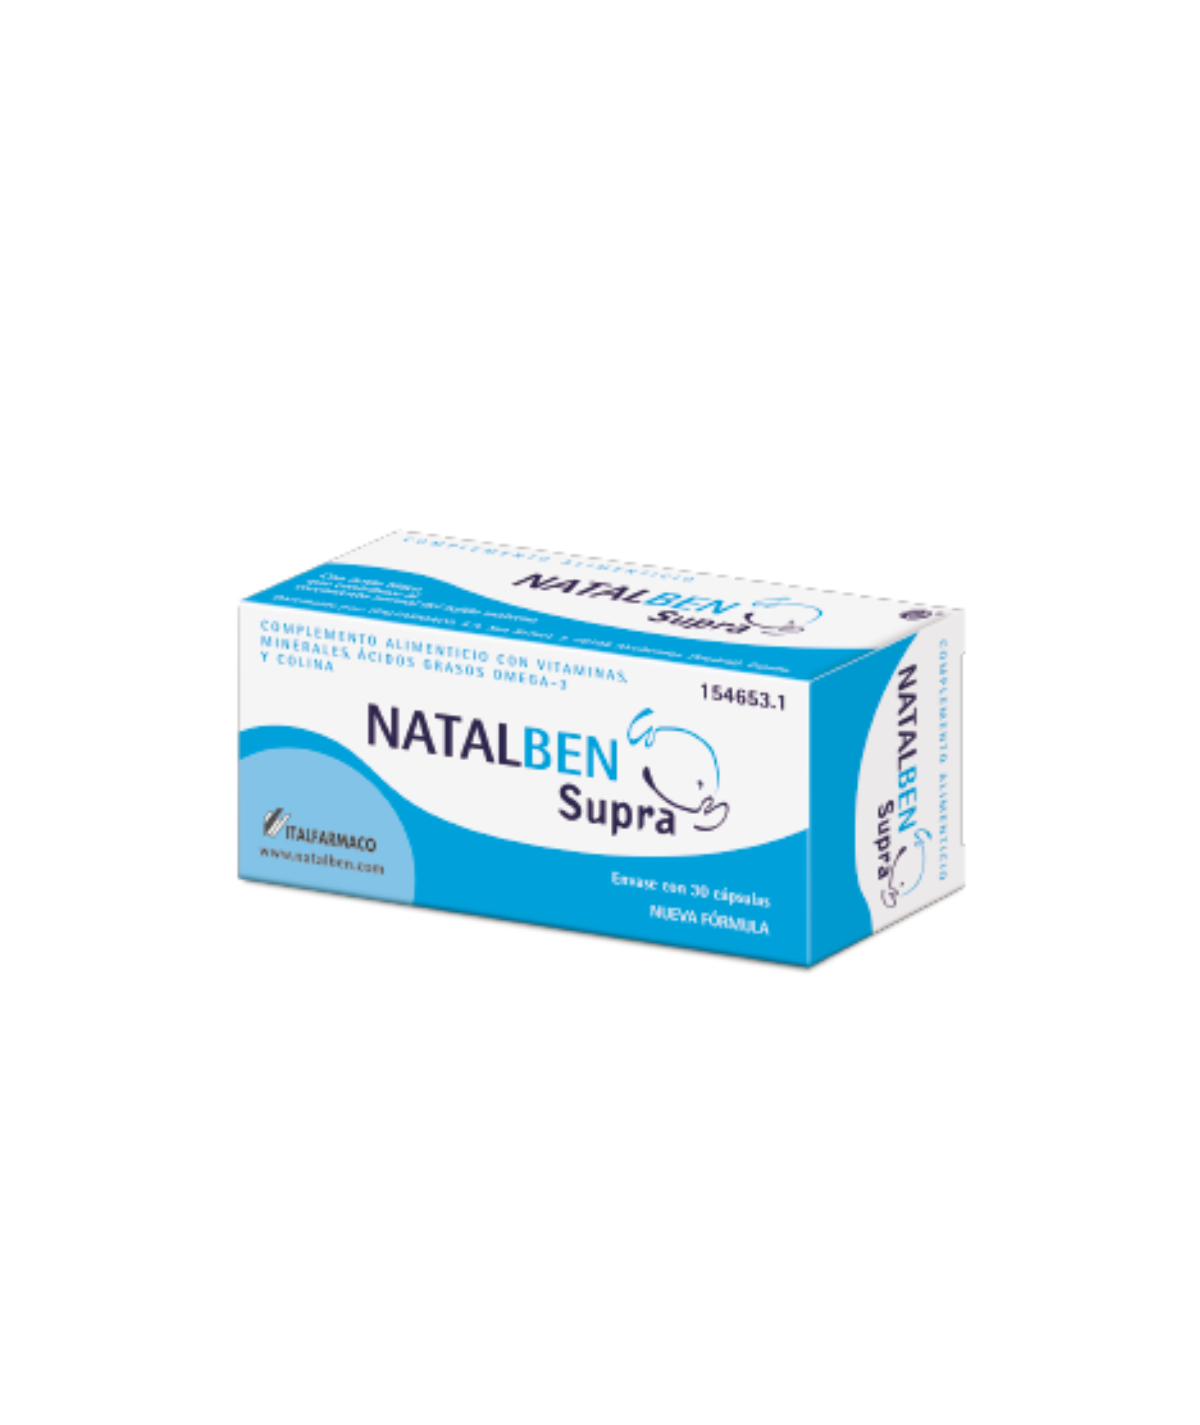 Natalben Supra 30 capsules